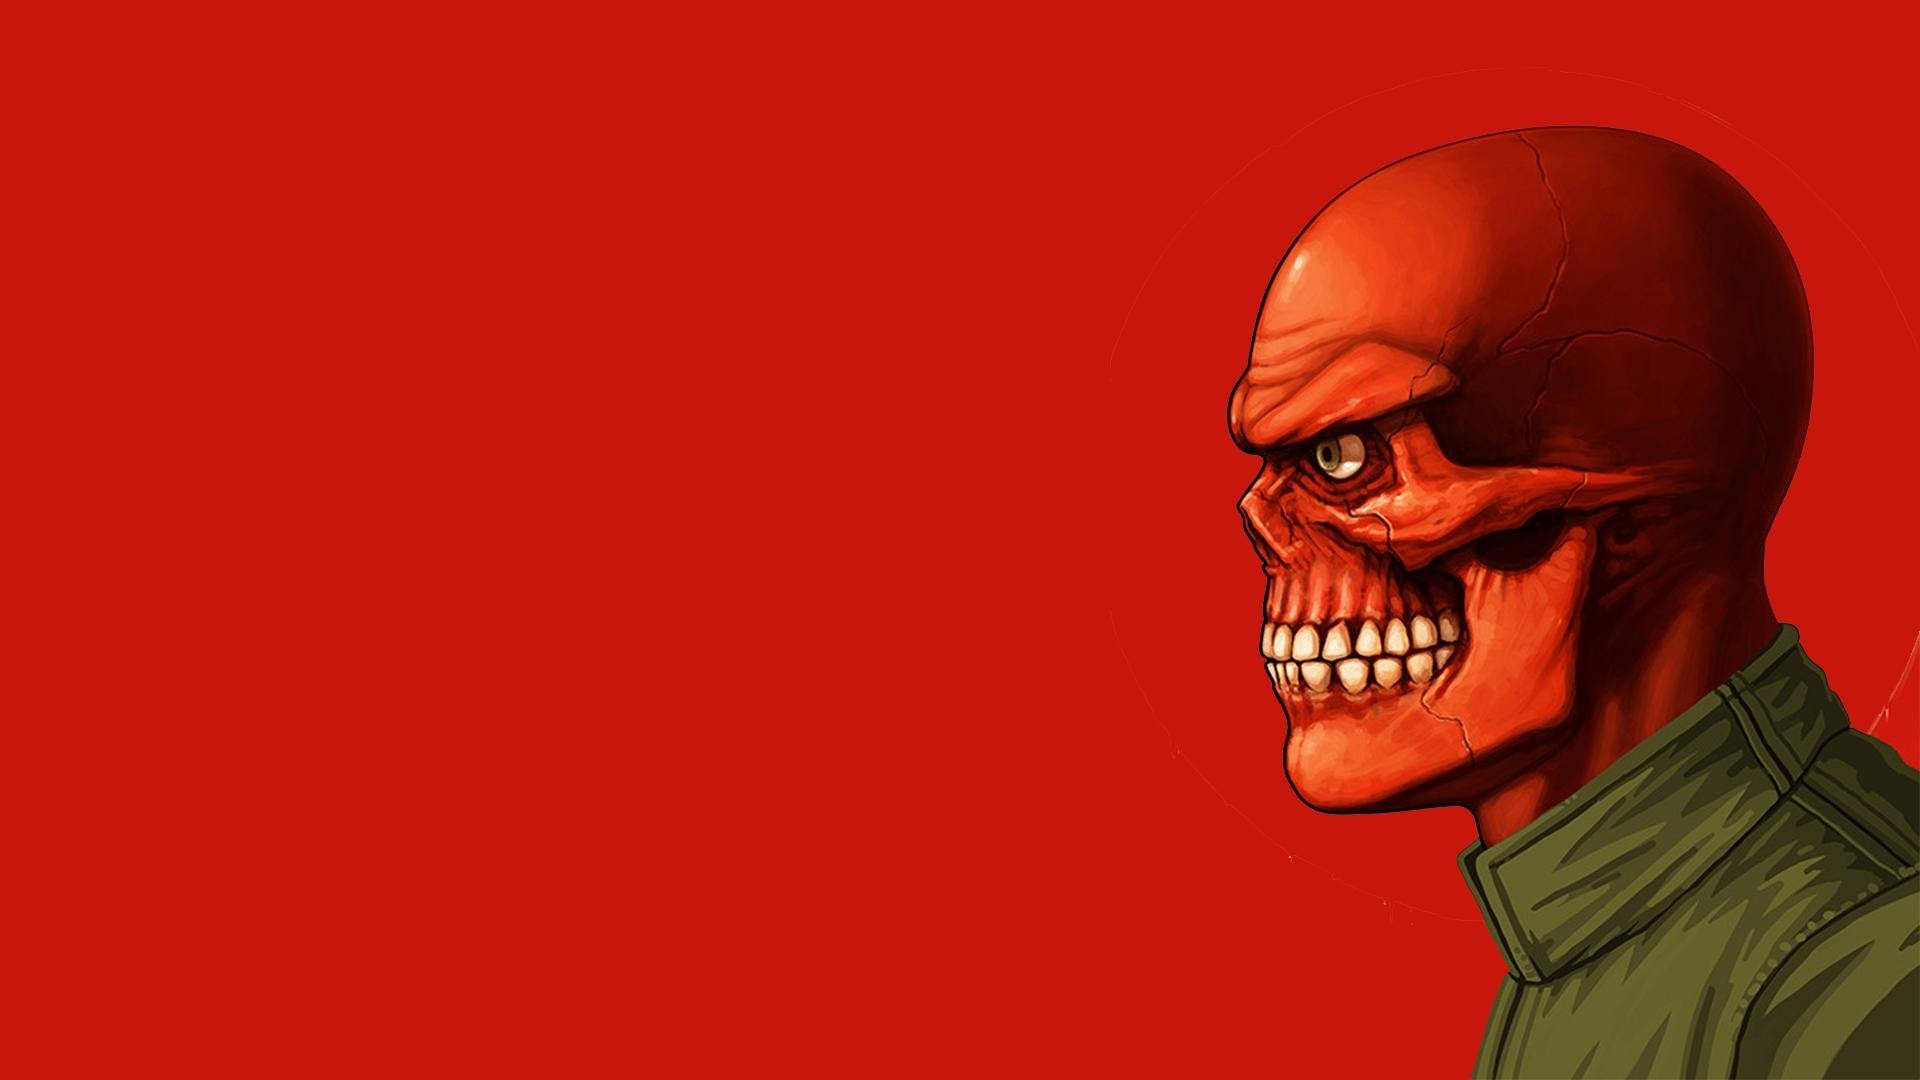 Red Skull Digital Art